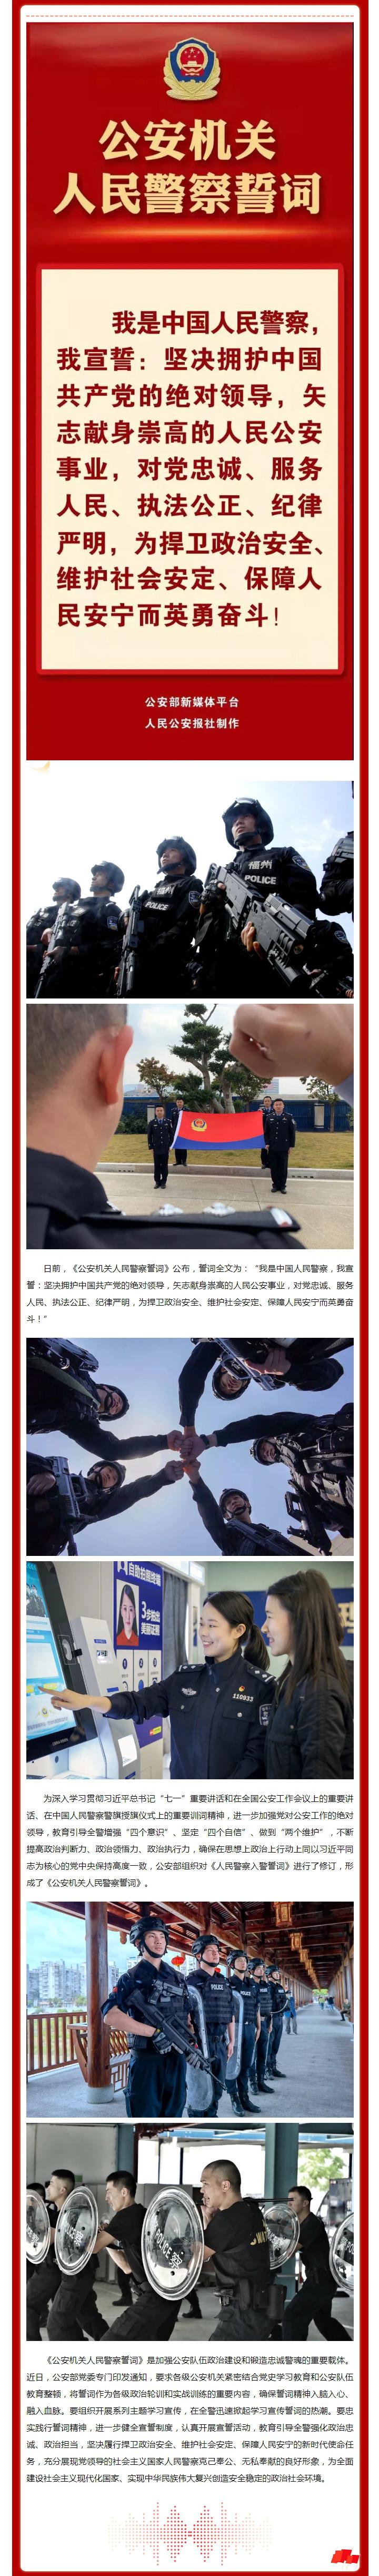 中国人民警察入警誓词图片